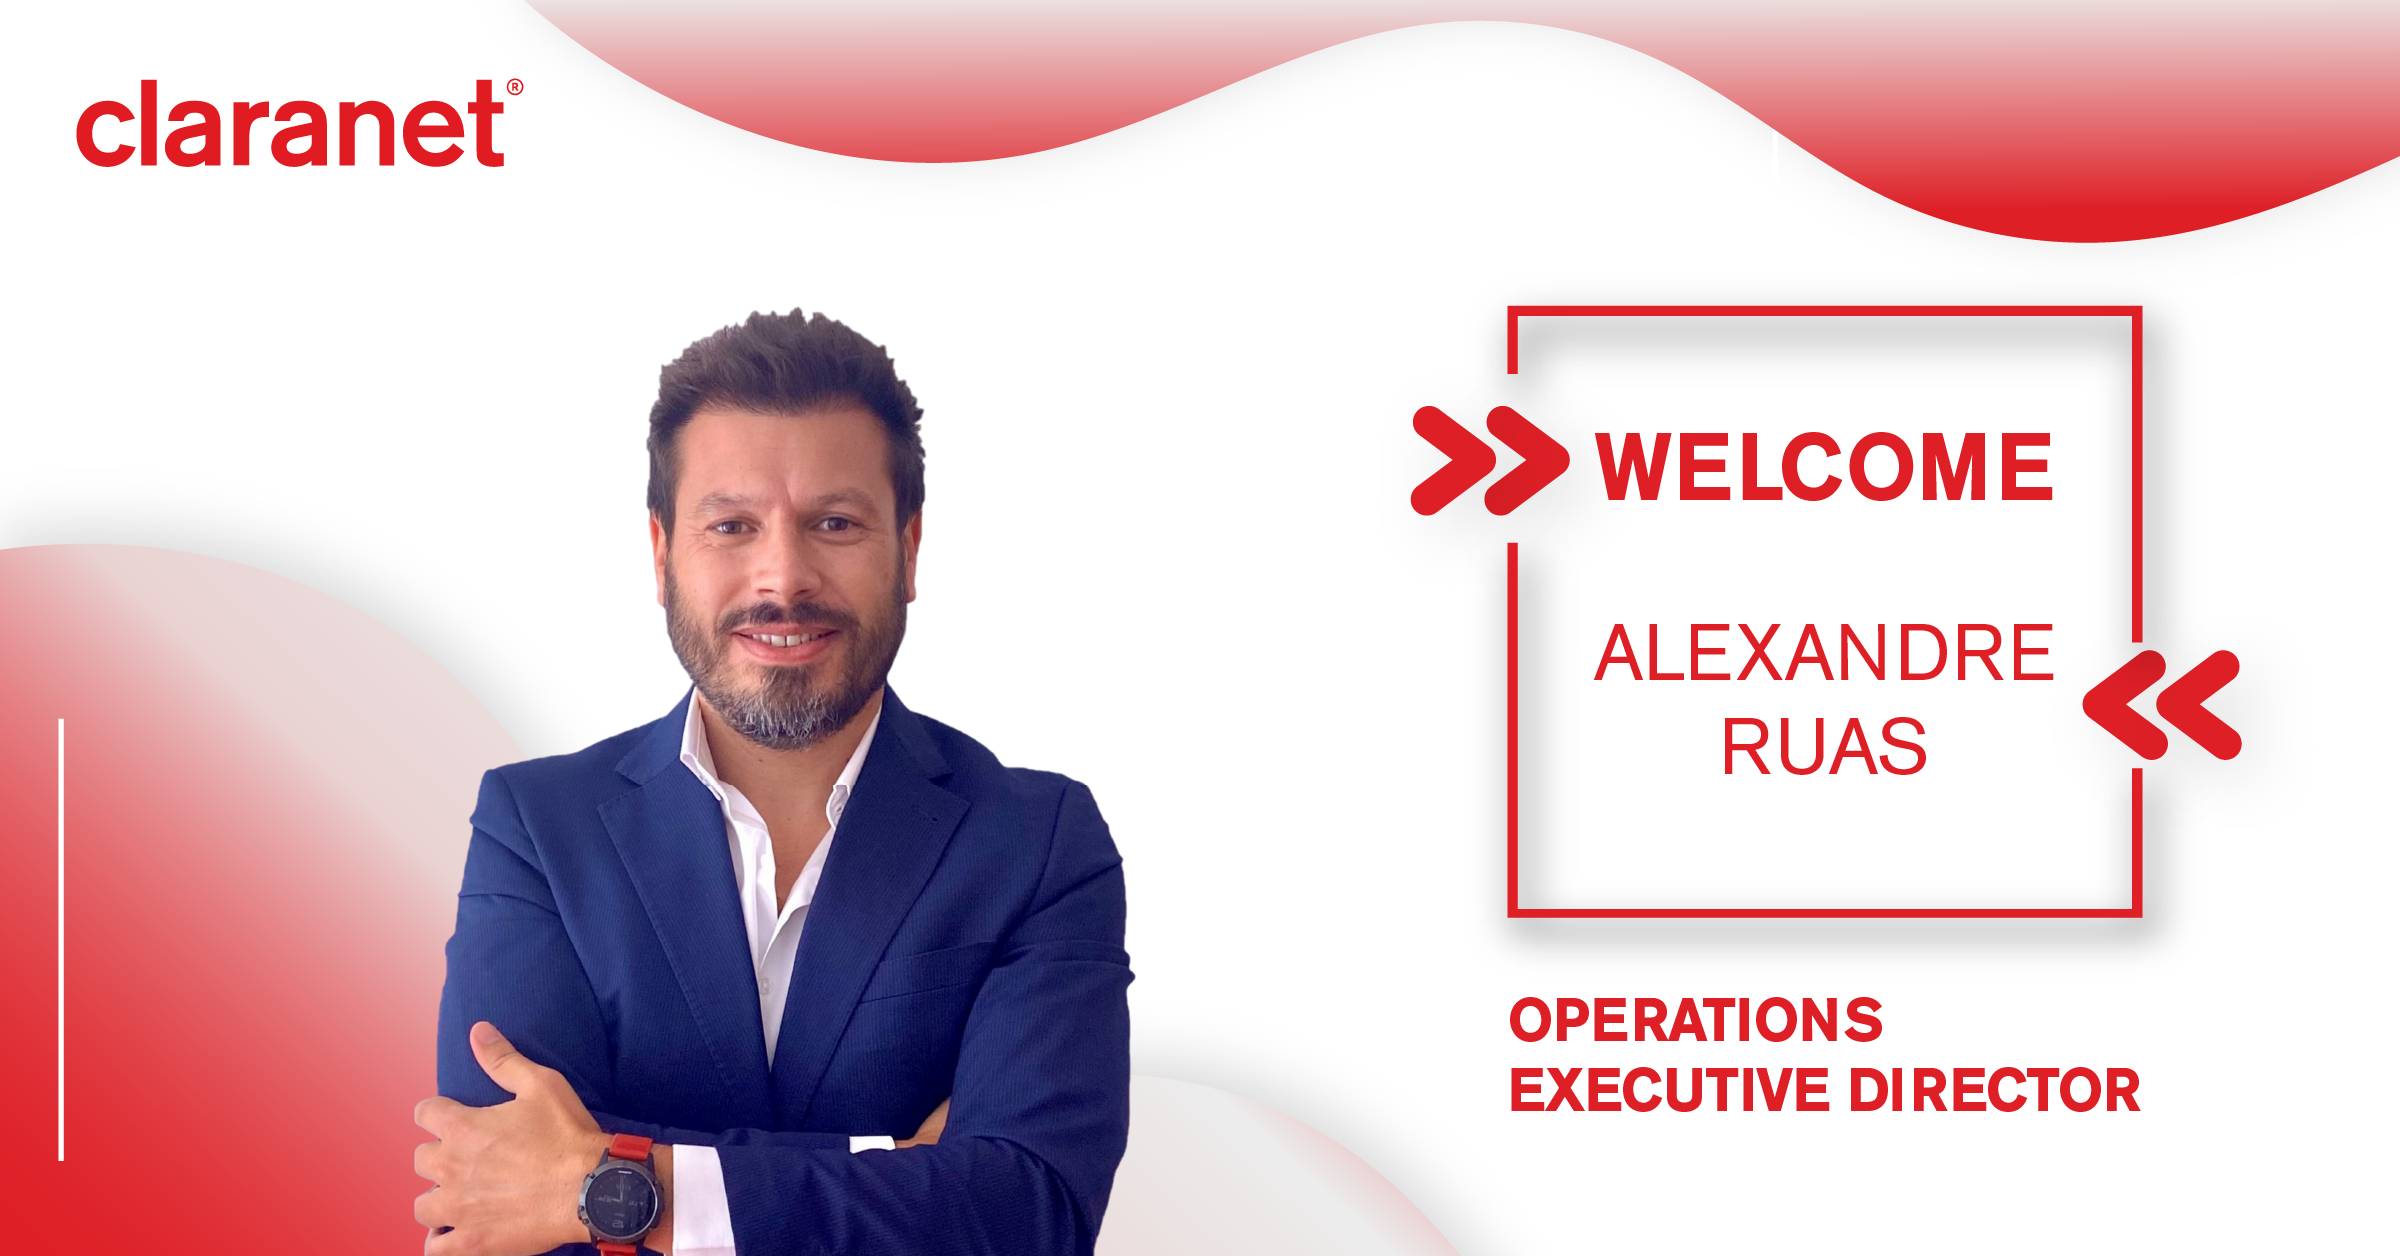 Claranet Portugal - Alexandre Ruas, Executive Director - Operations